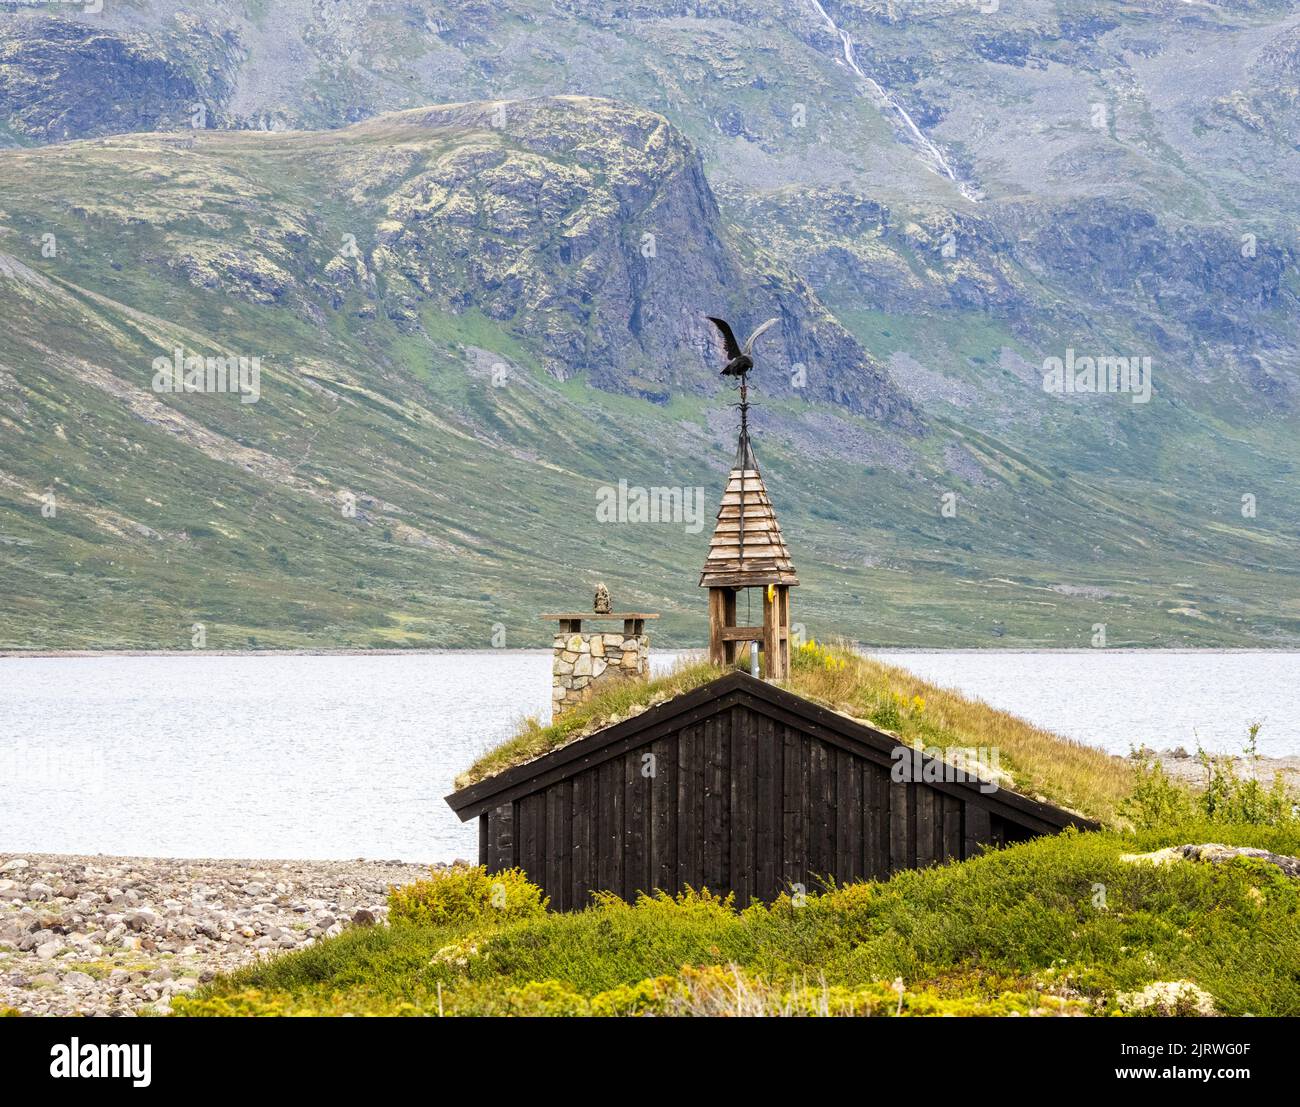 Beffroi surmontée d'un aigle de mer sur un bâtiment dans le village historique à Eidsbugarden près du lac Bygdin - Parc national de Jotunheimen Norvège Banque D'Images